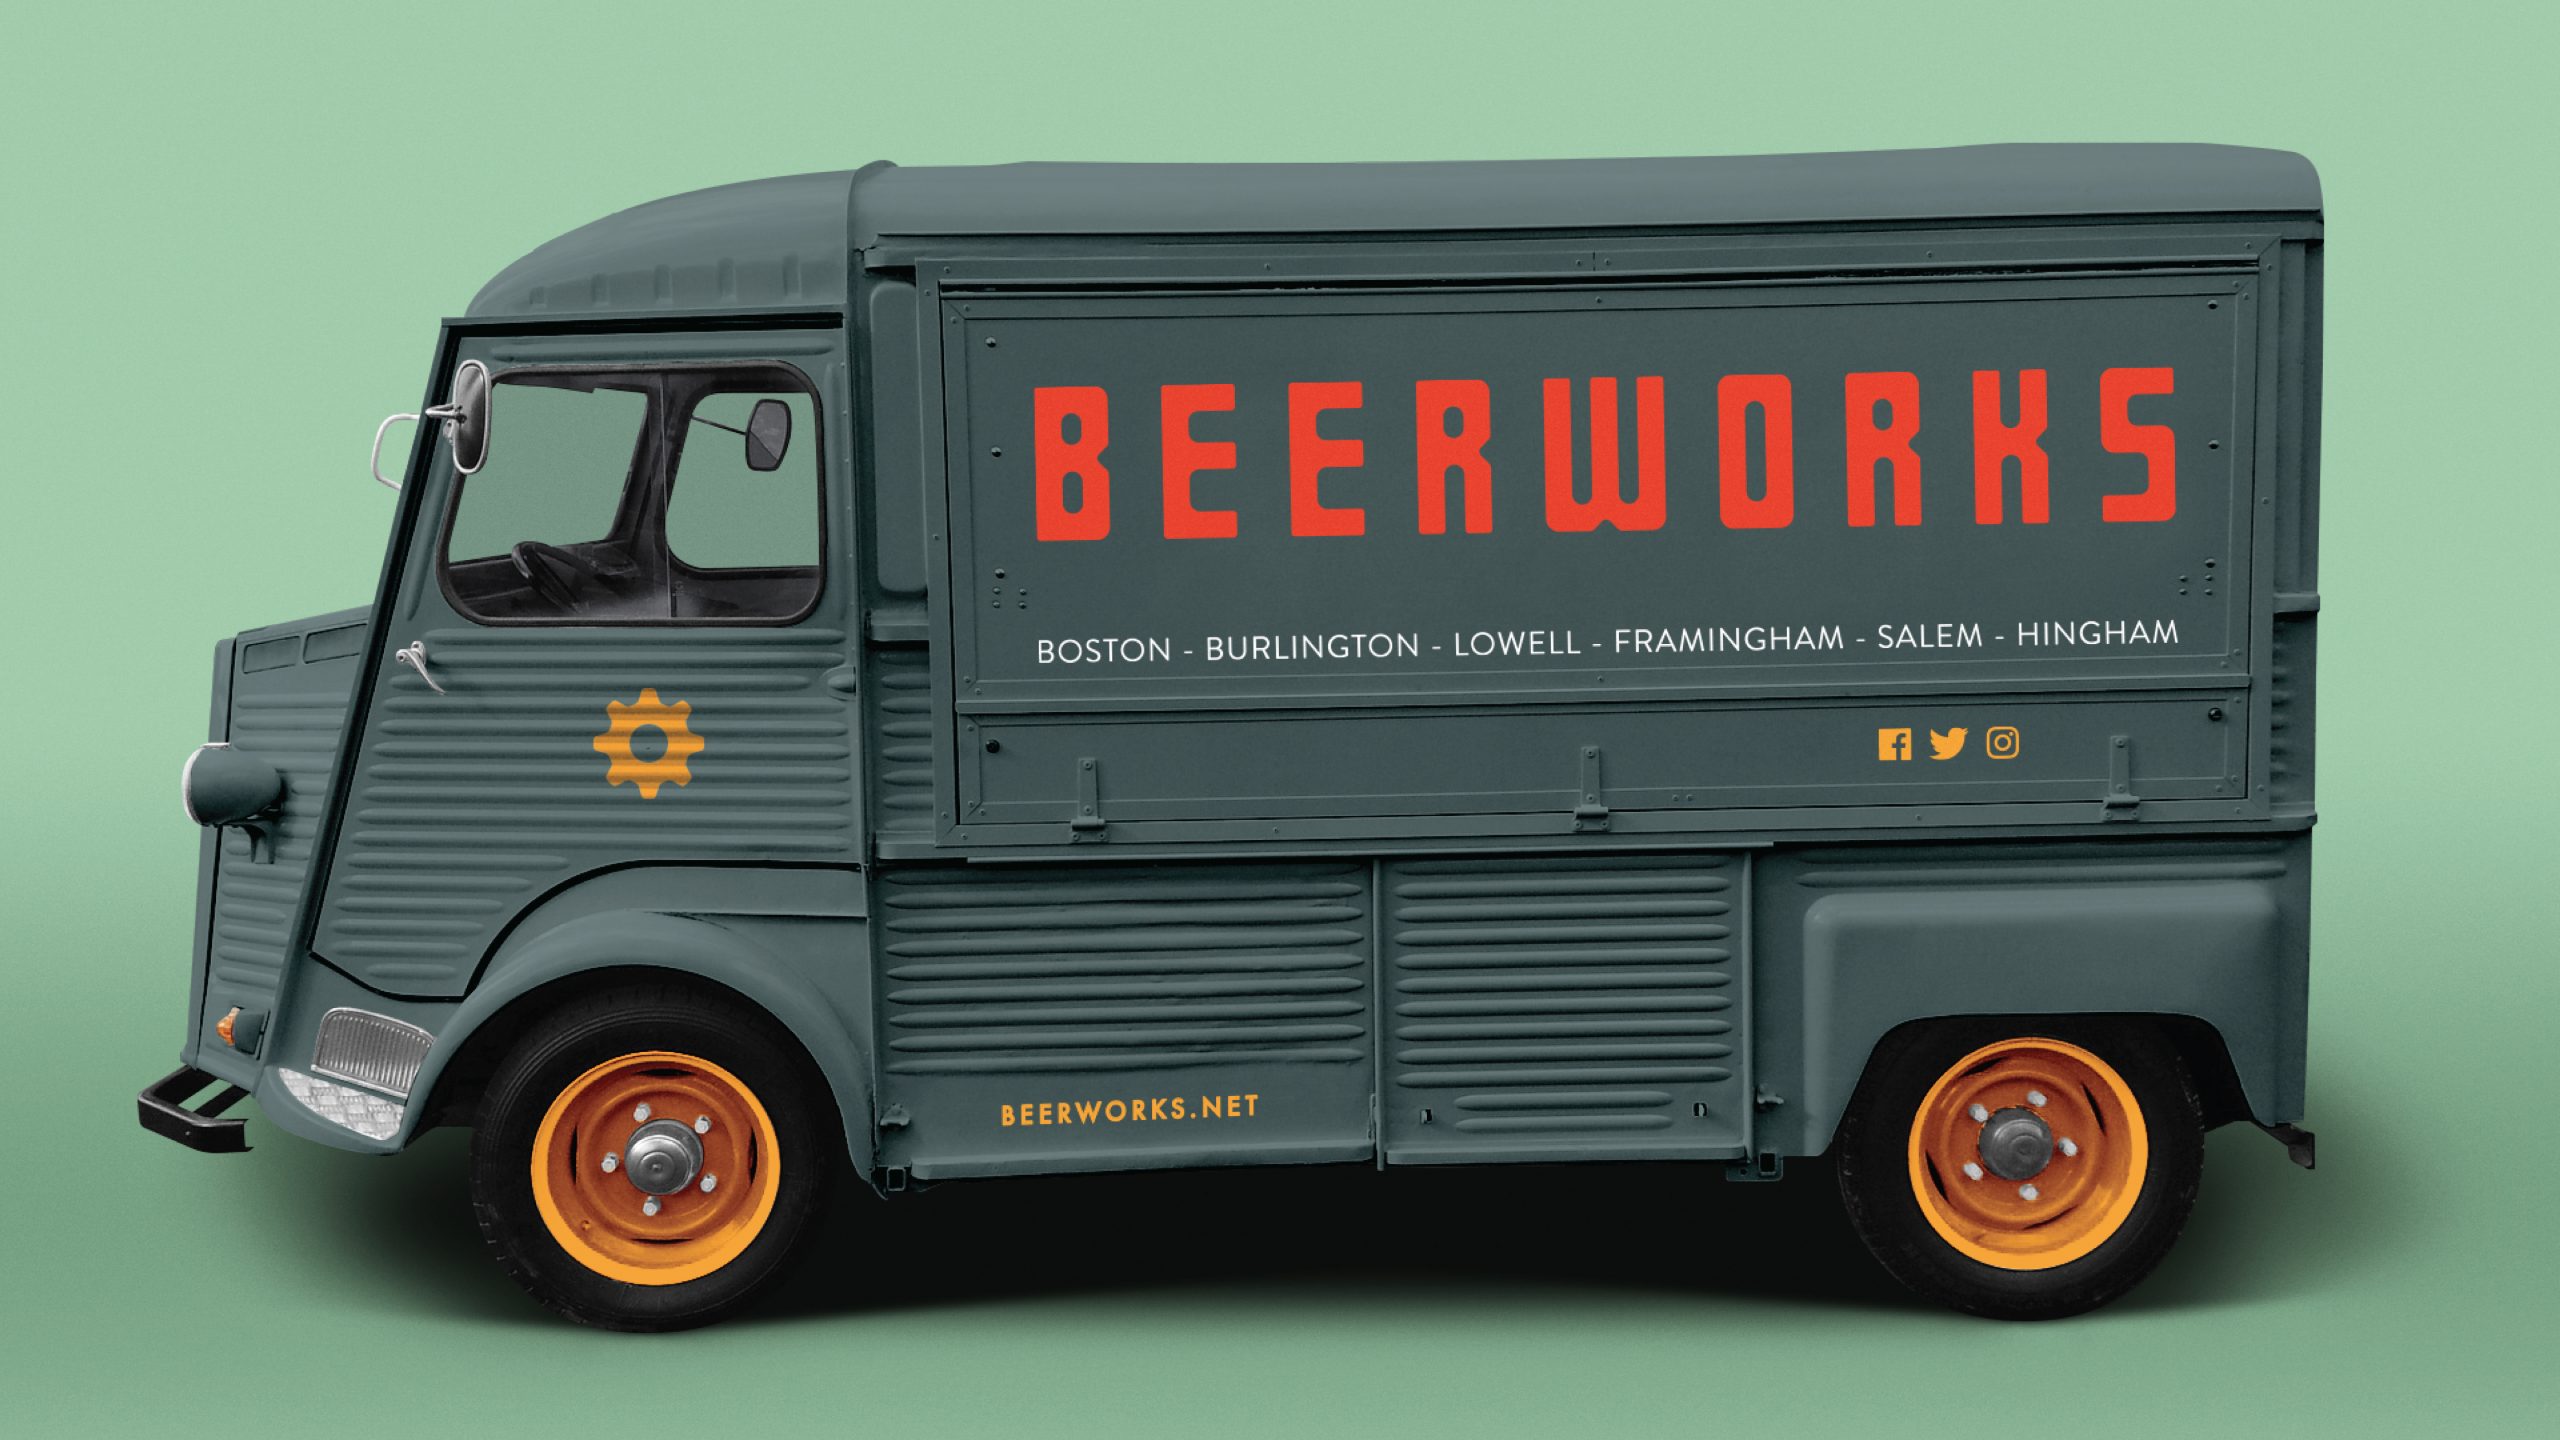 Beerworks Truck